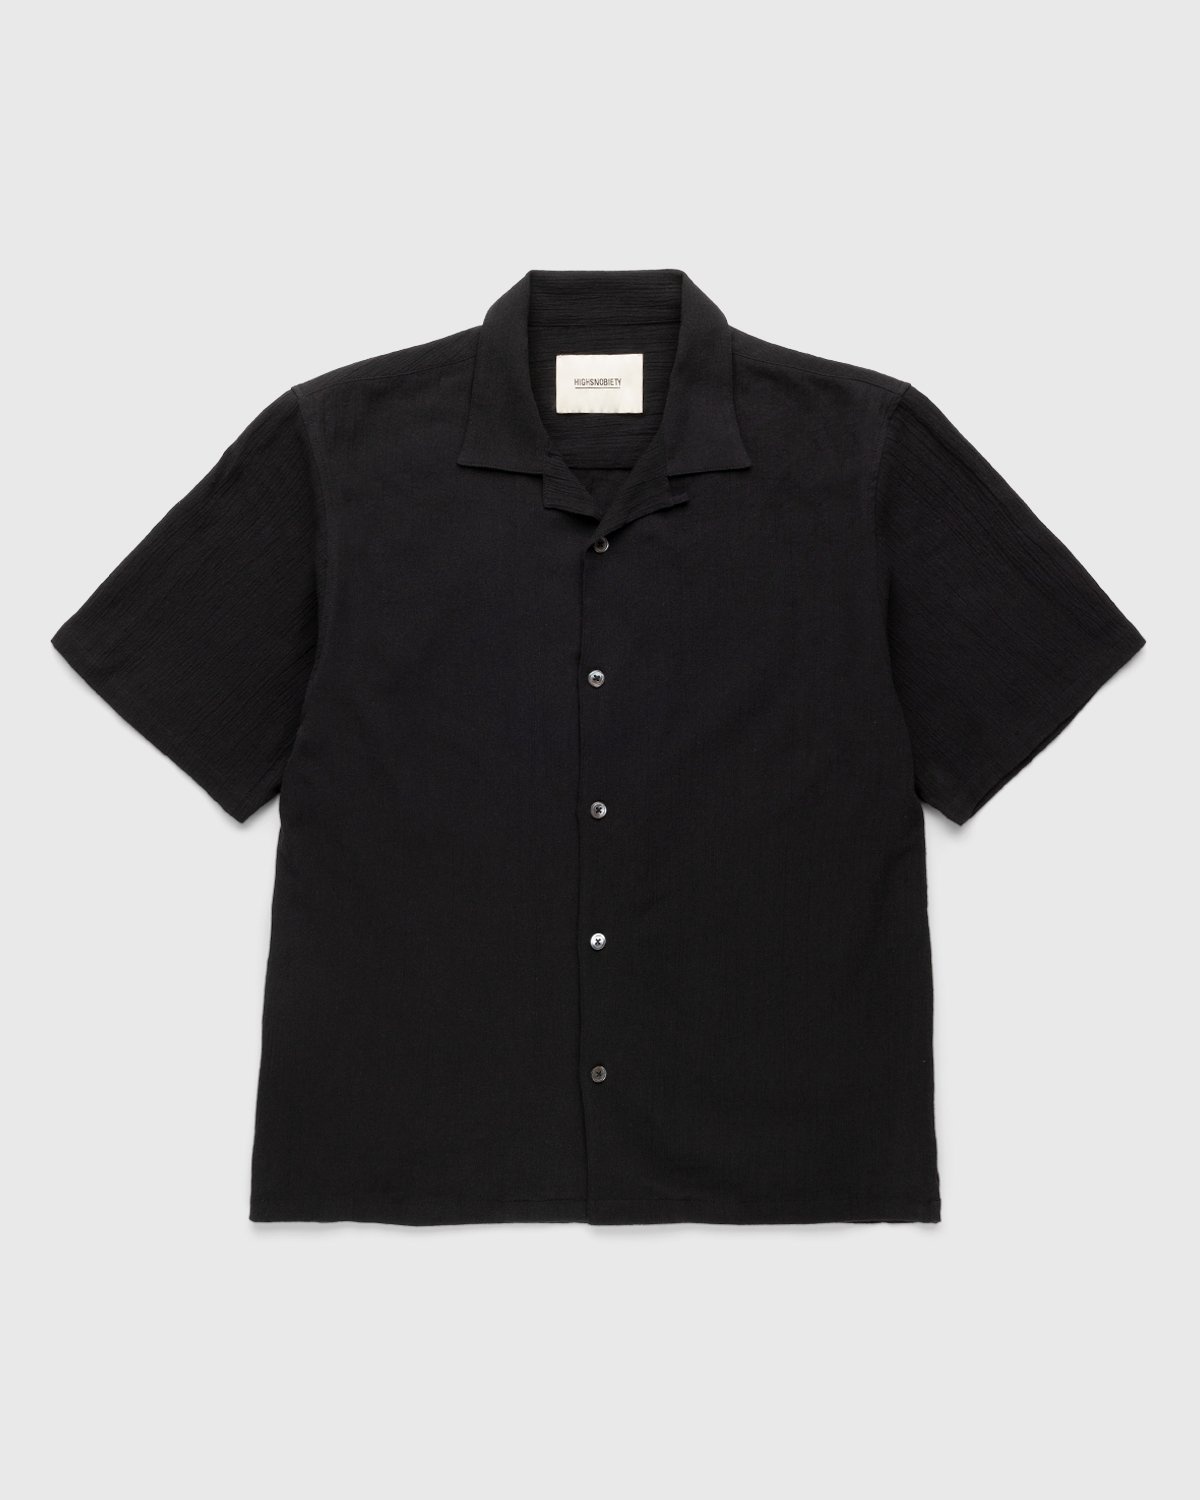 Highsnobiety – Crepe Short Sleeve Shirt Black - Shirts - Black - Image 1